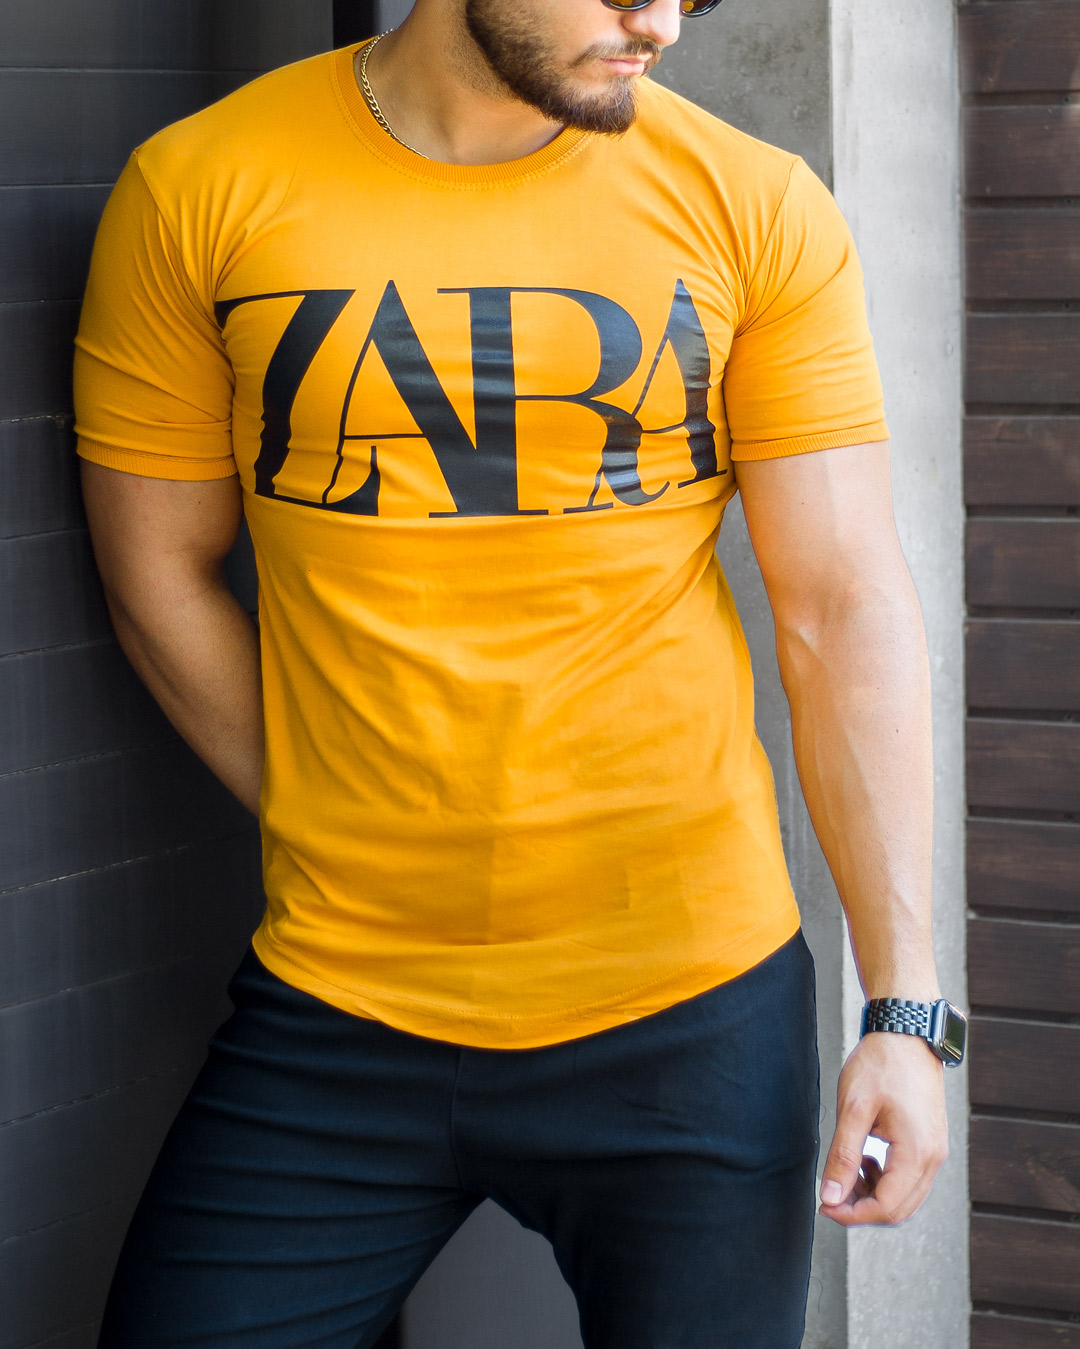 تیشرت مردانه مدل ZARA (خردلی)